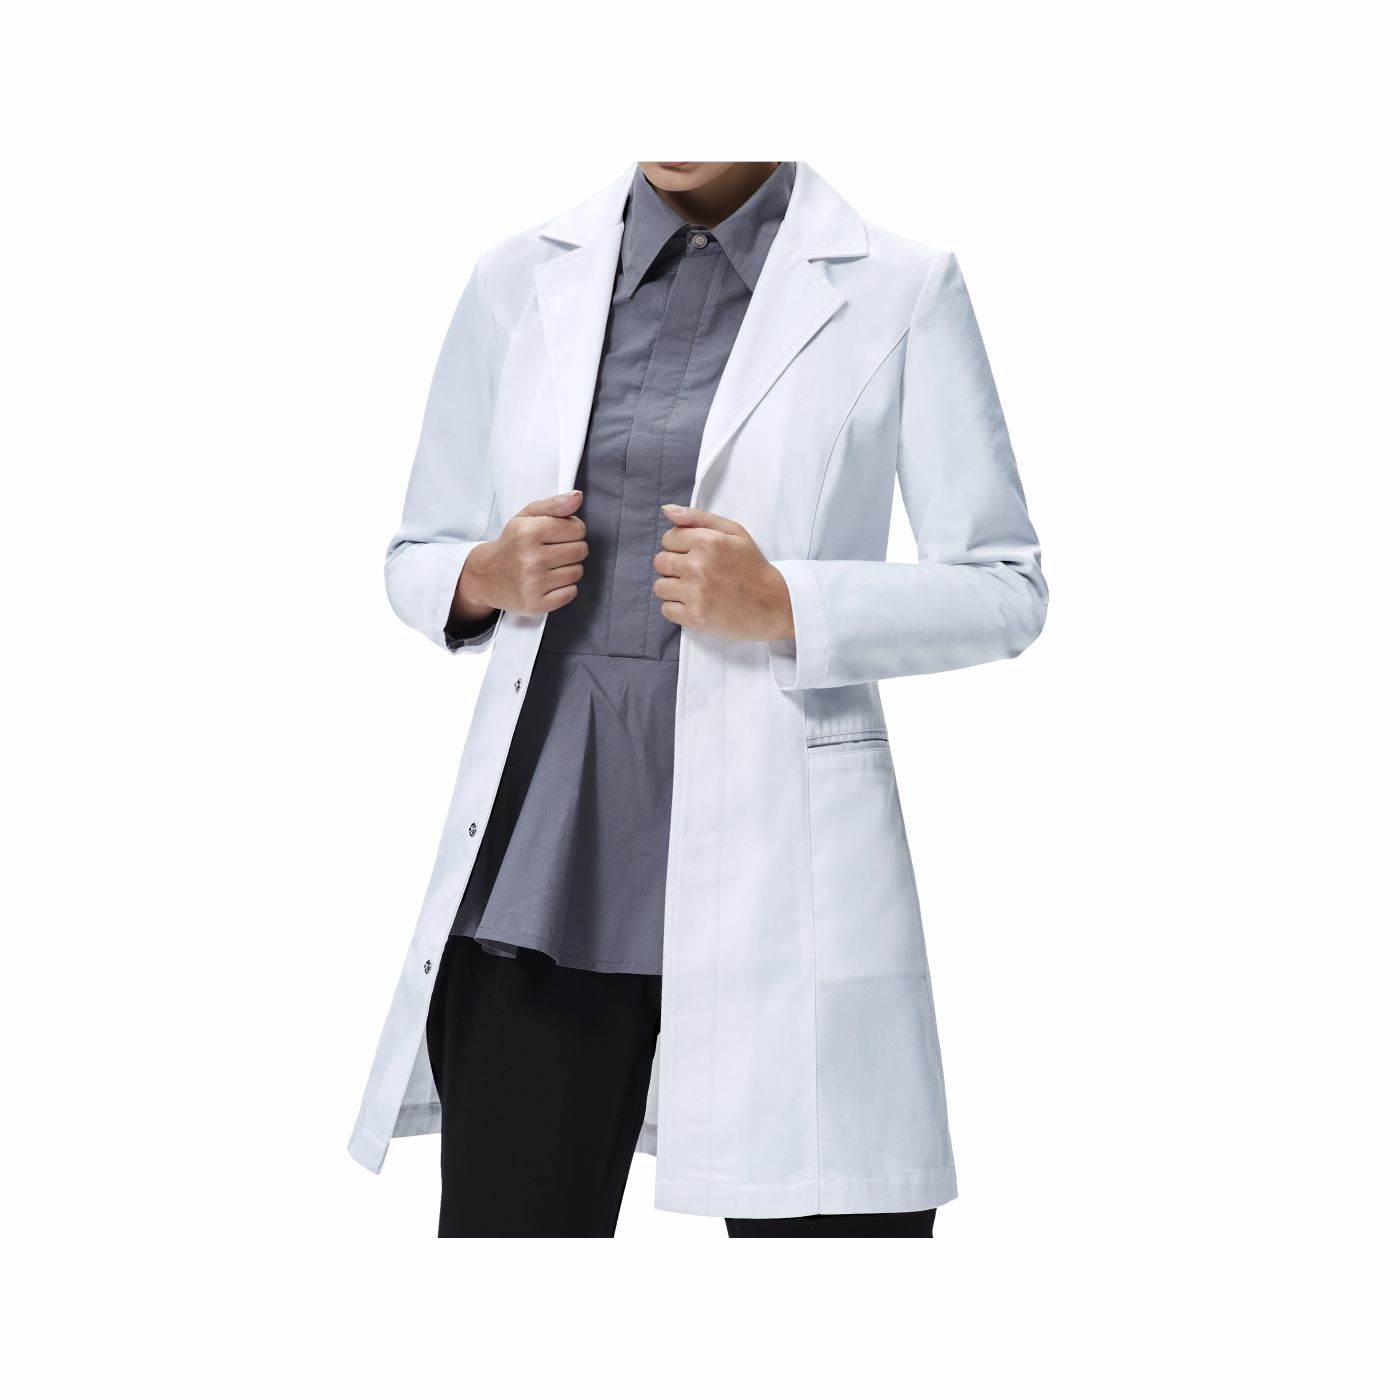 Doctors coat